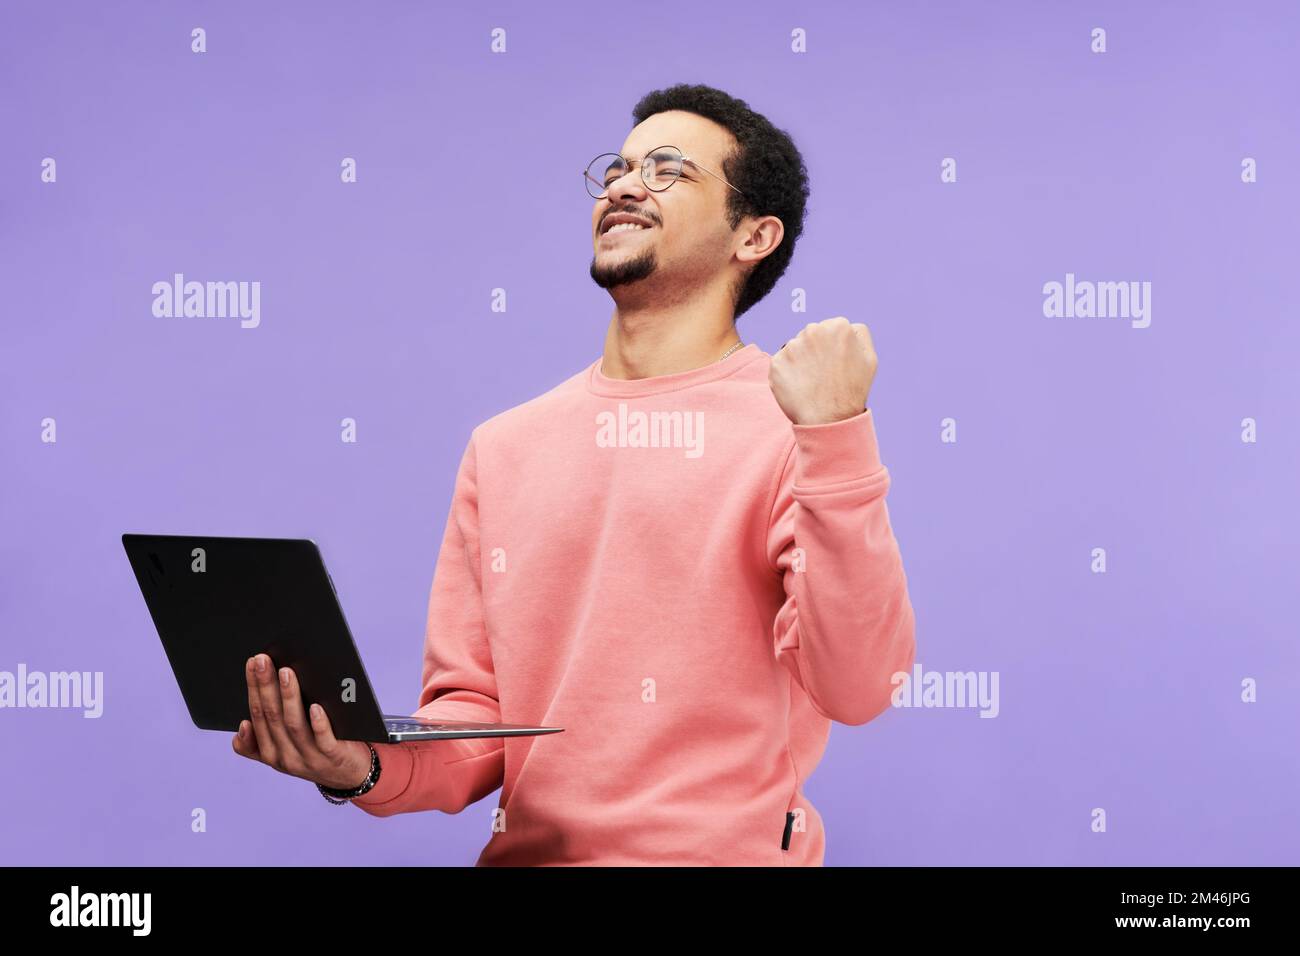 Ekstatischer Typ in pinkfarbener Freizeitkleidung hält die Augen geschlossen, während er den Laptop hält und die Aufregung vor violettem Hintergrund isoliert ausdrückt Stockfoto